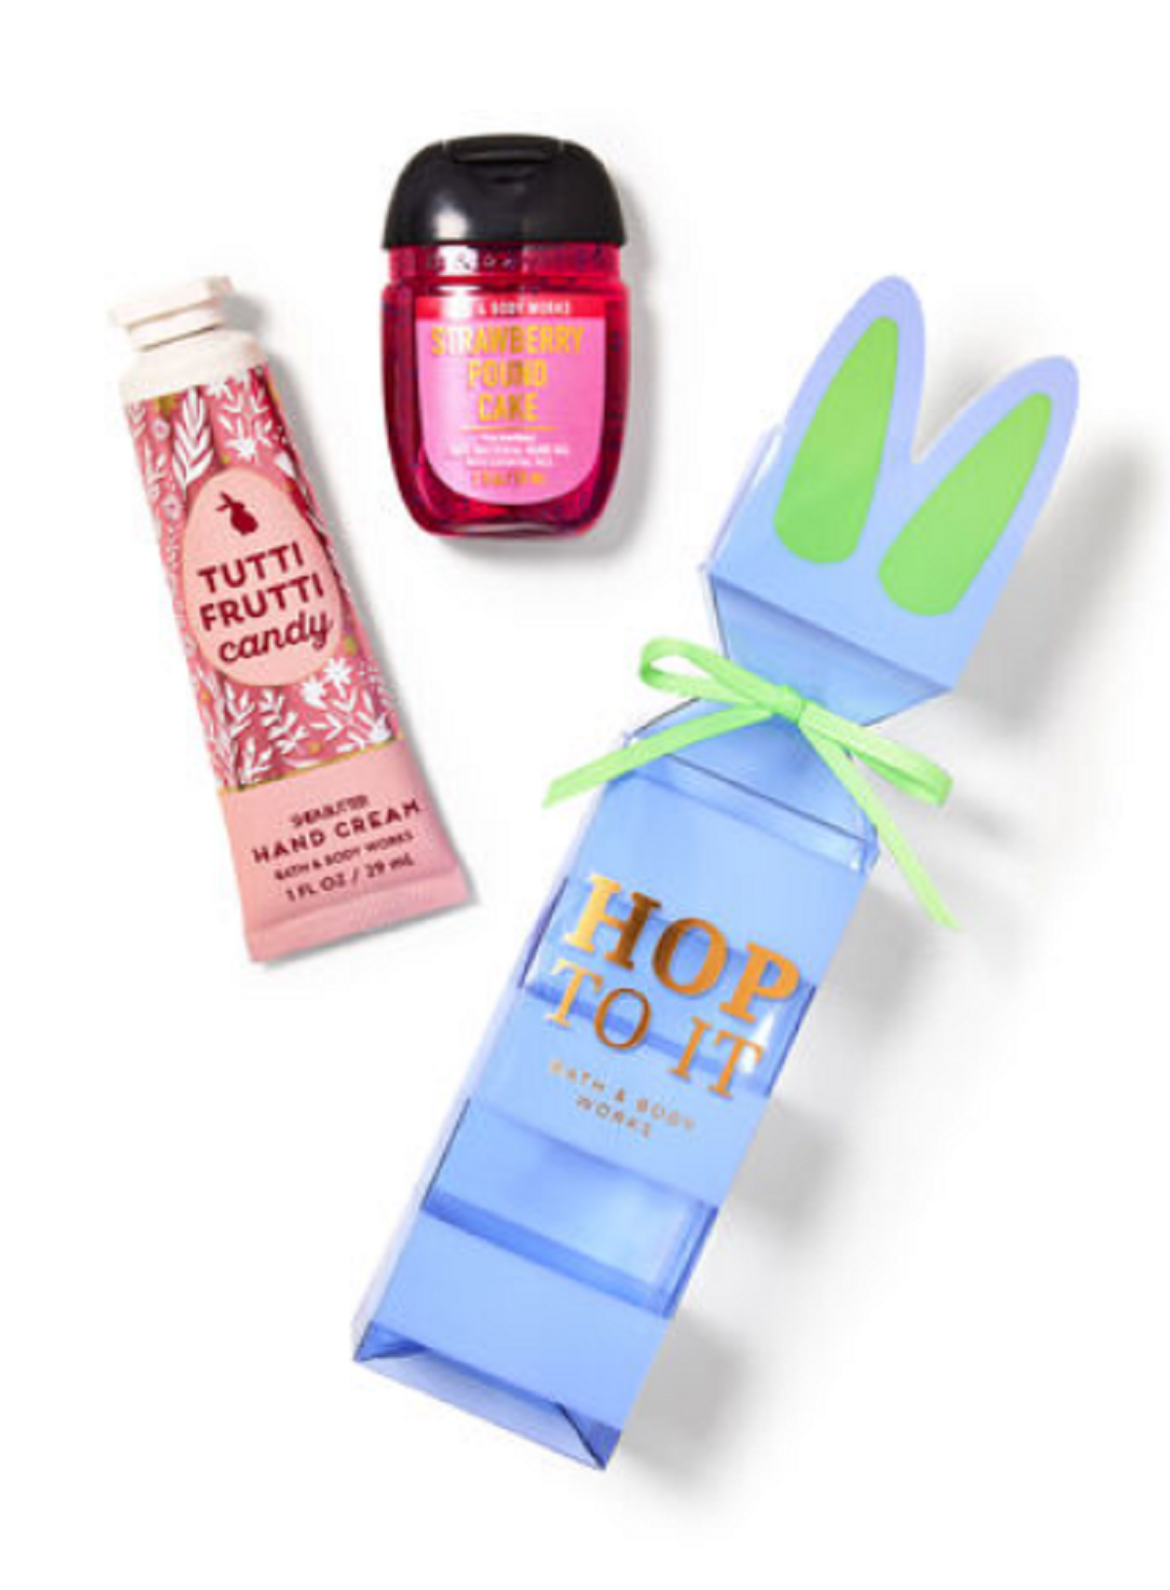 Tutti Frutti Candy mini gift set, basket stuffer ideas